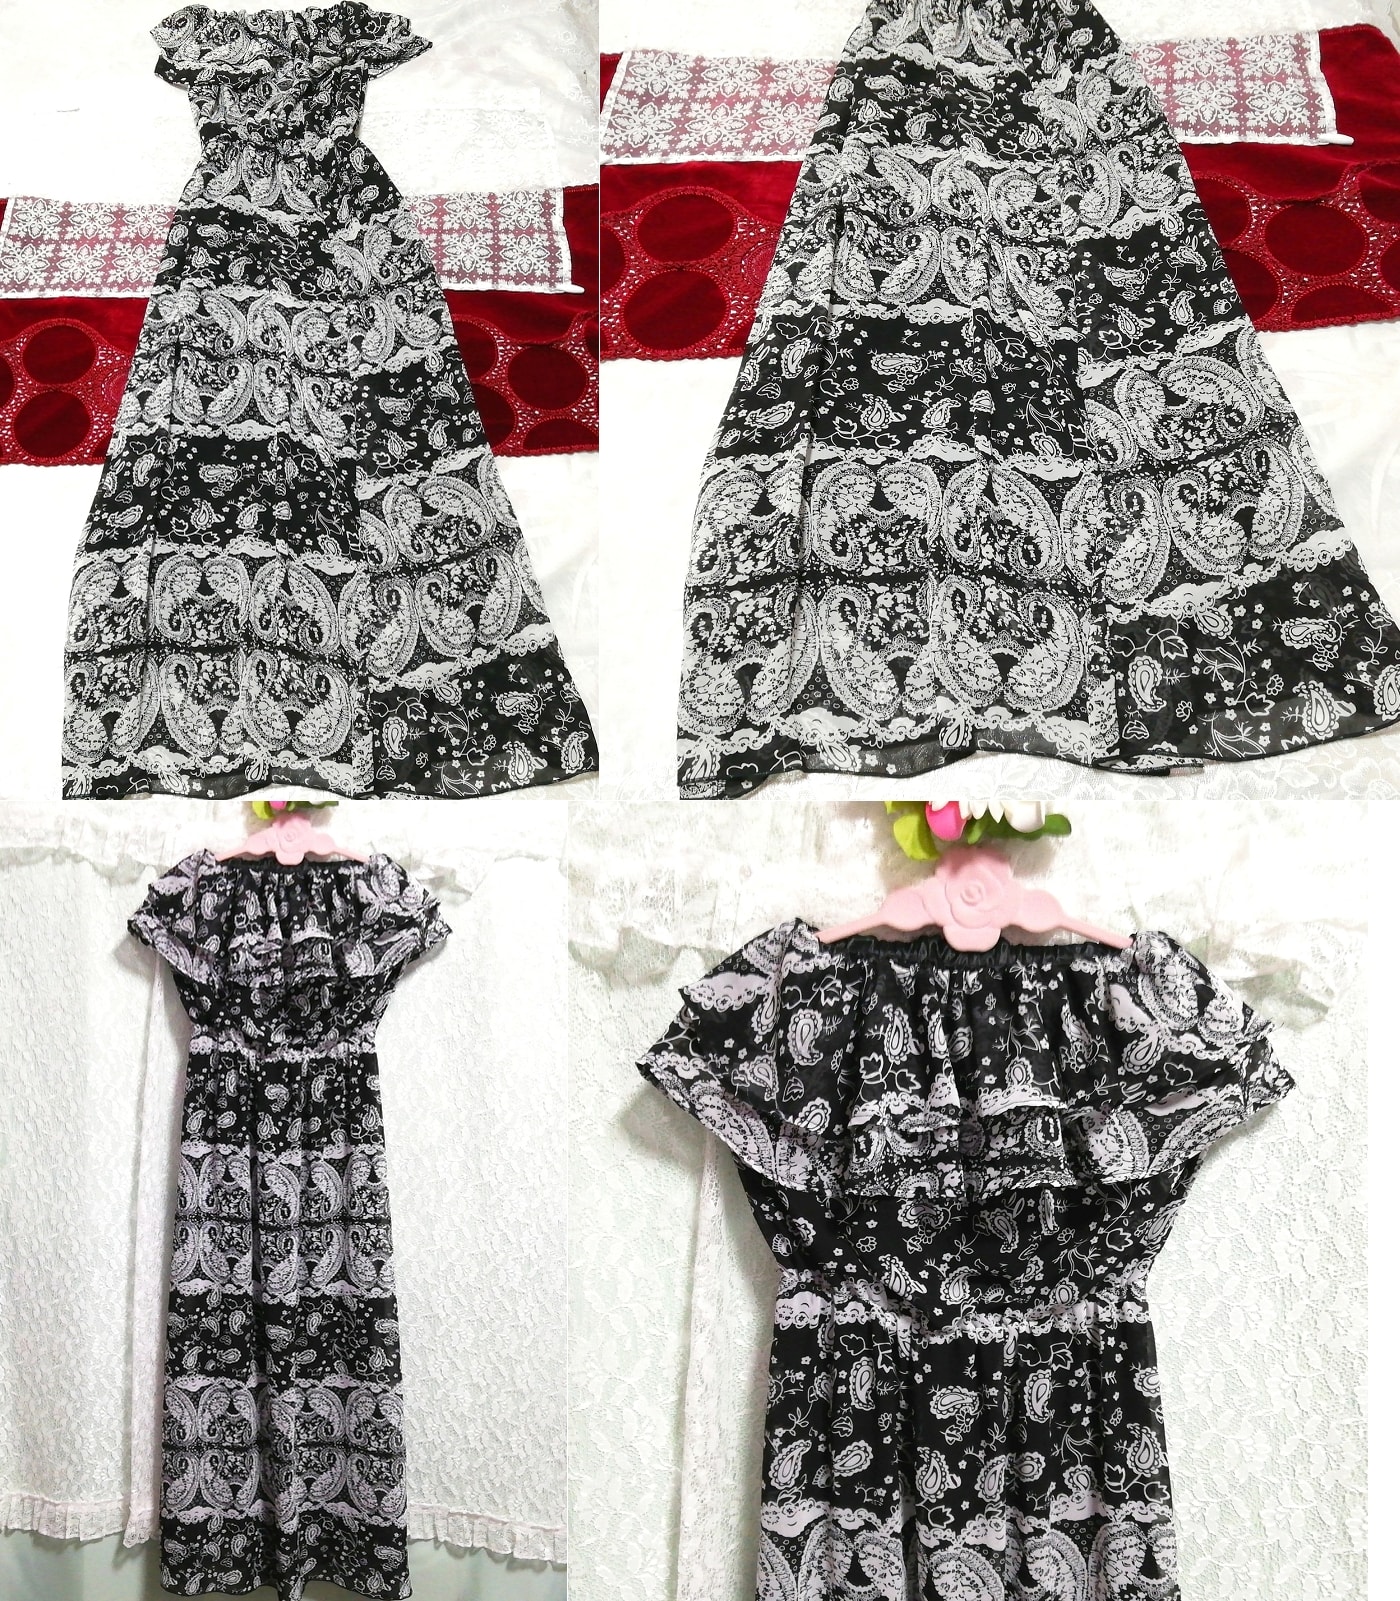 Black gray ethnic pattern chiffon negligee nightgown maxi dress flare dress, long skirt, m size